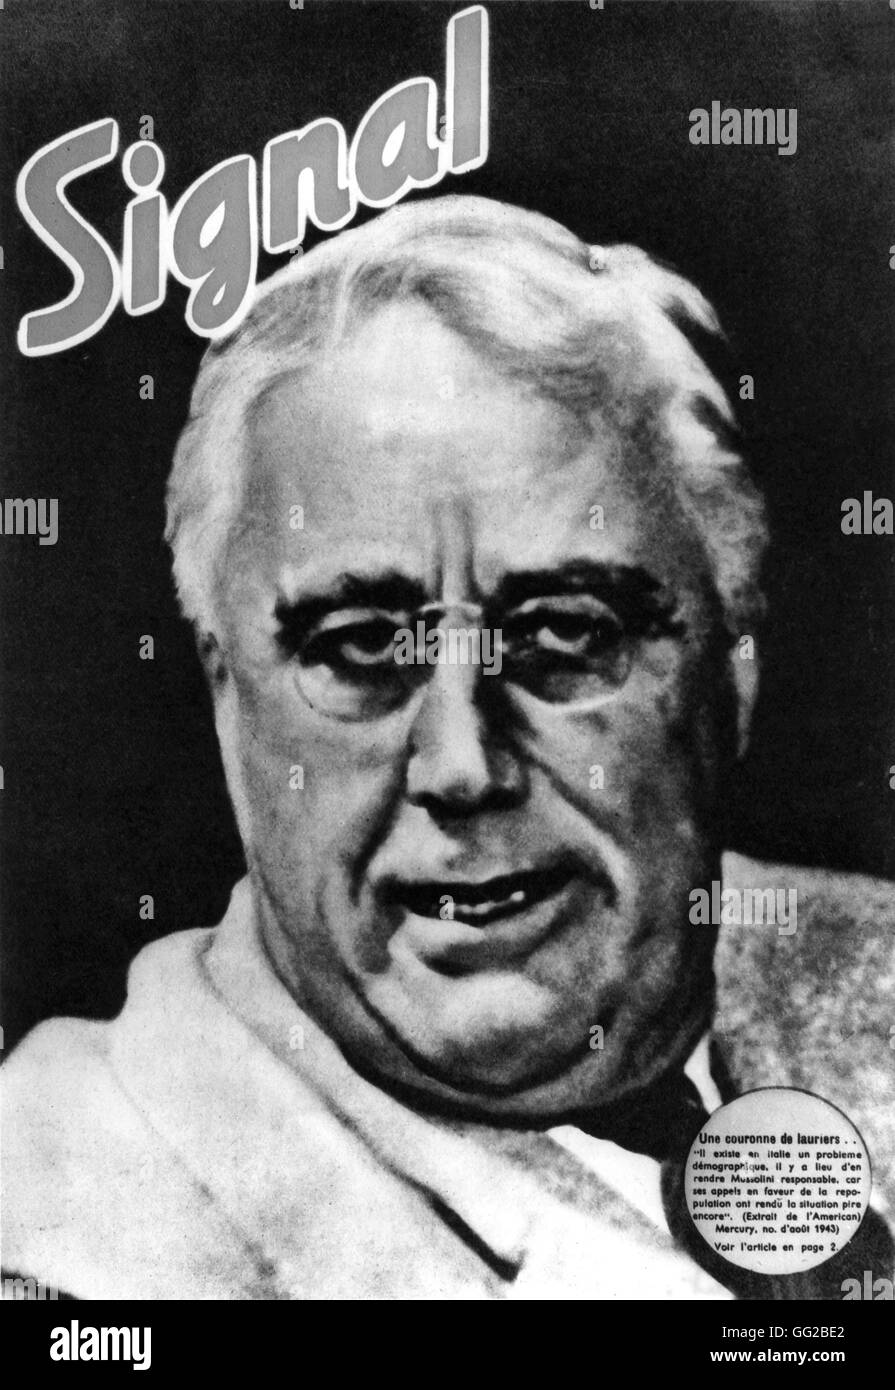 Retrato del Presidente Roosevelt en la portada de la revista 'Señal' de noviembre de 1943 Estados Unidos - Segunda Guerra Mundial Foto de stock